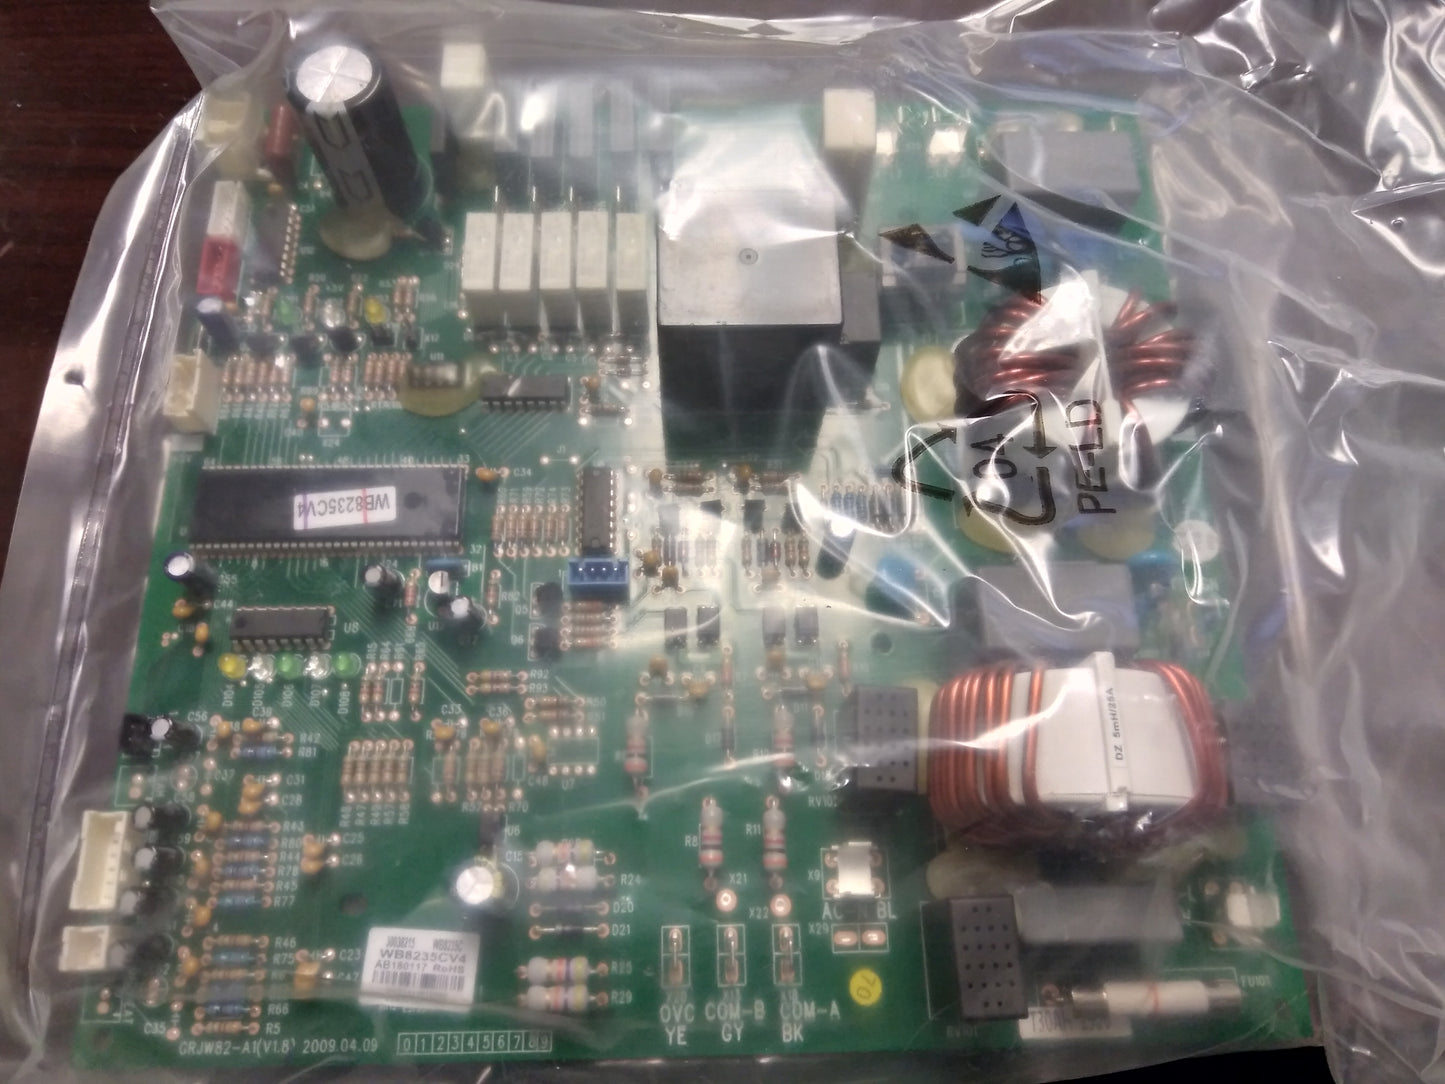 MAIN PCB CONTROL BOARD 250V 60 HZ